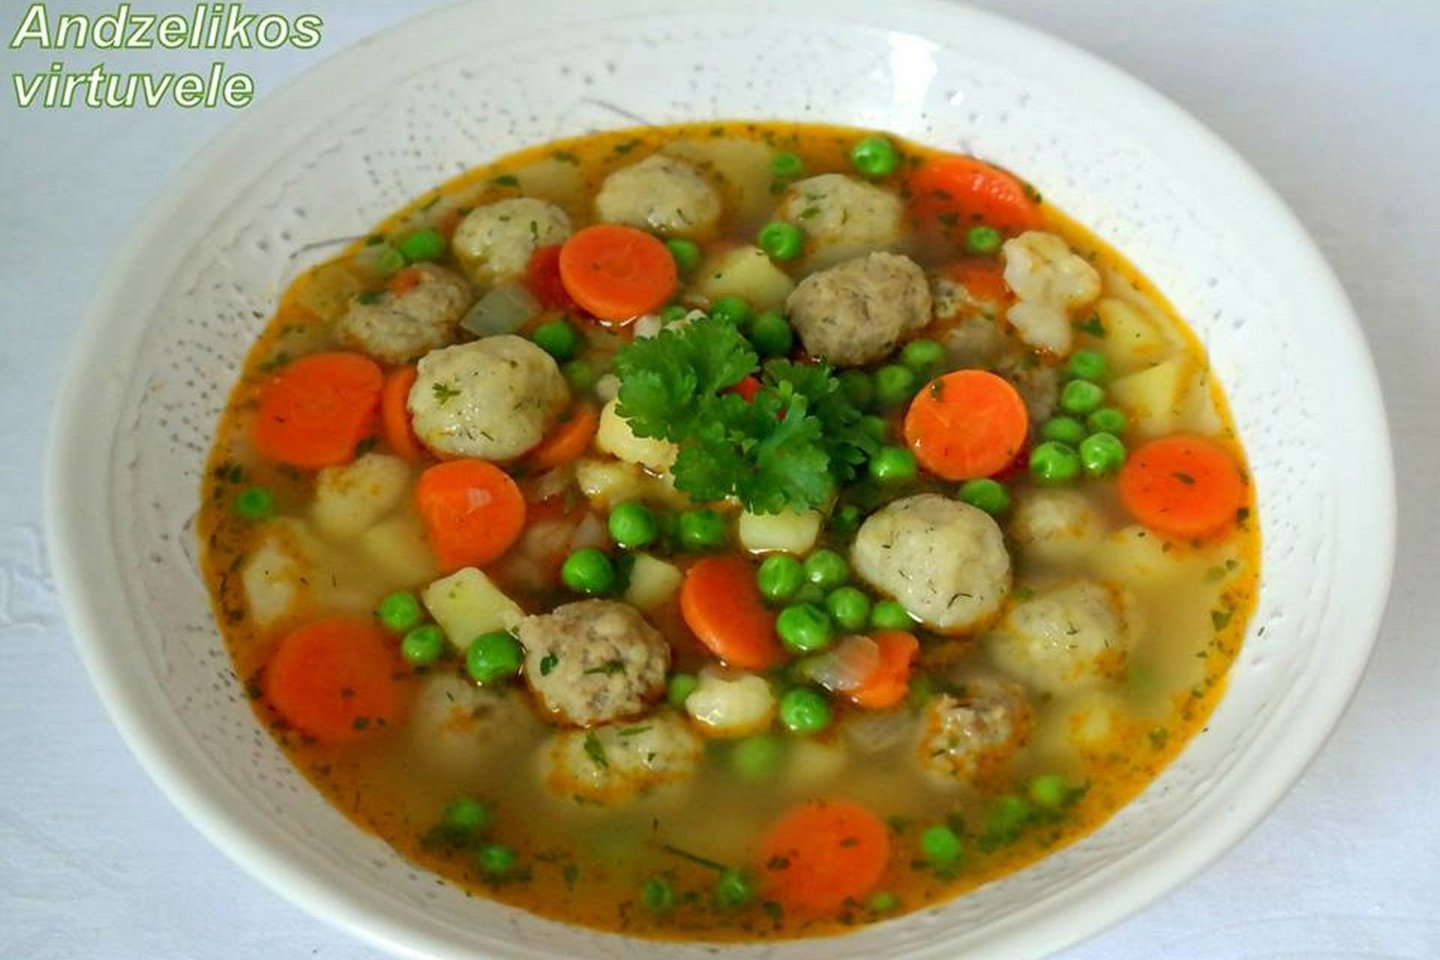  Daržovių sriuba su faršo ir sūrio kukuliukais.<br> Nuotr. iš „Andželikos virtuvėlė“.